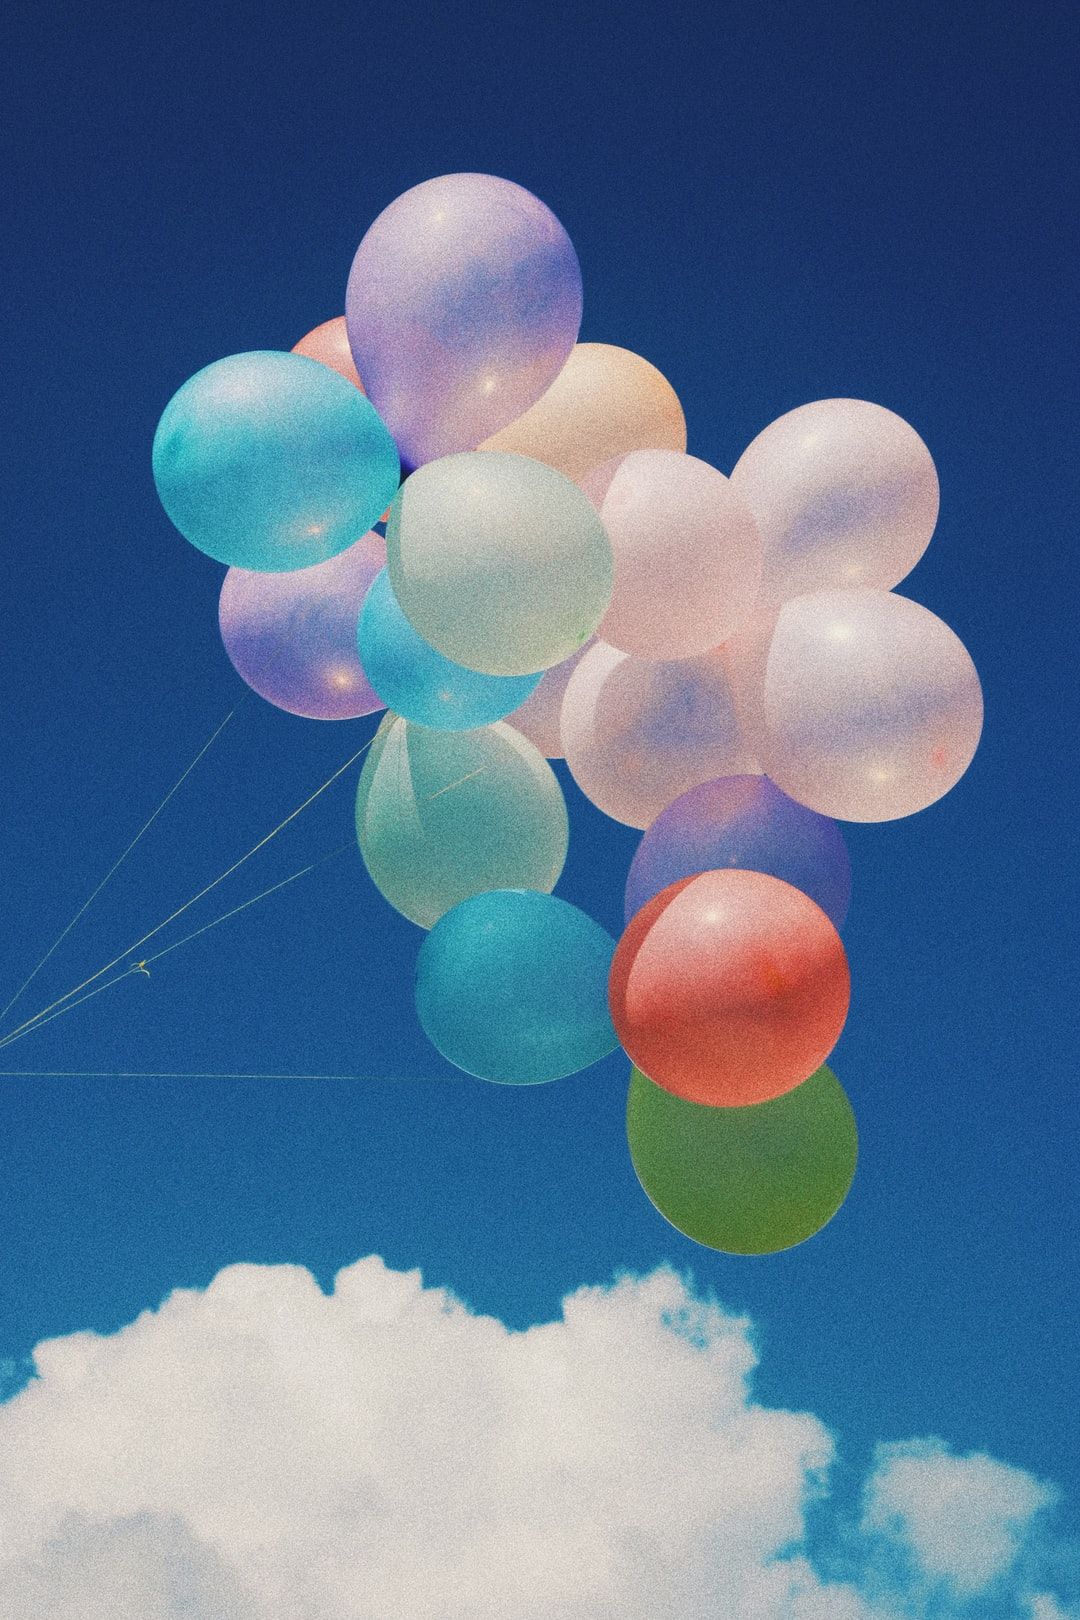 Las mejores 20+ imágenes de globos | Descargar fotos gratis